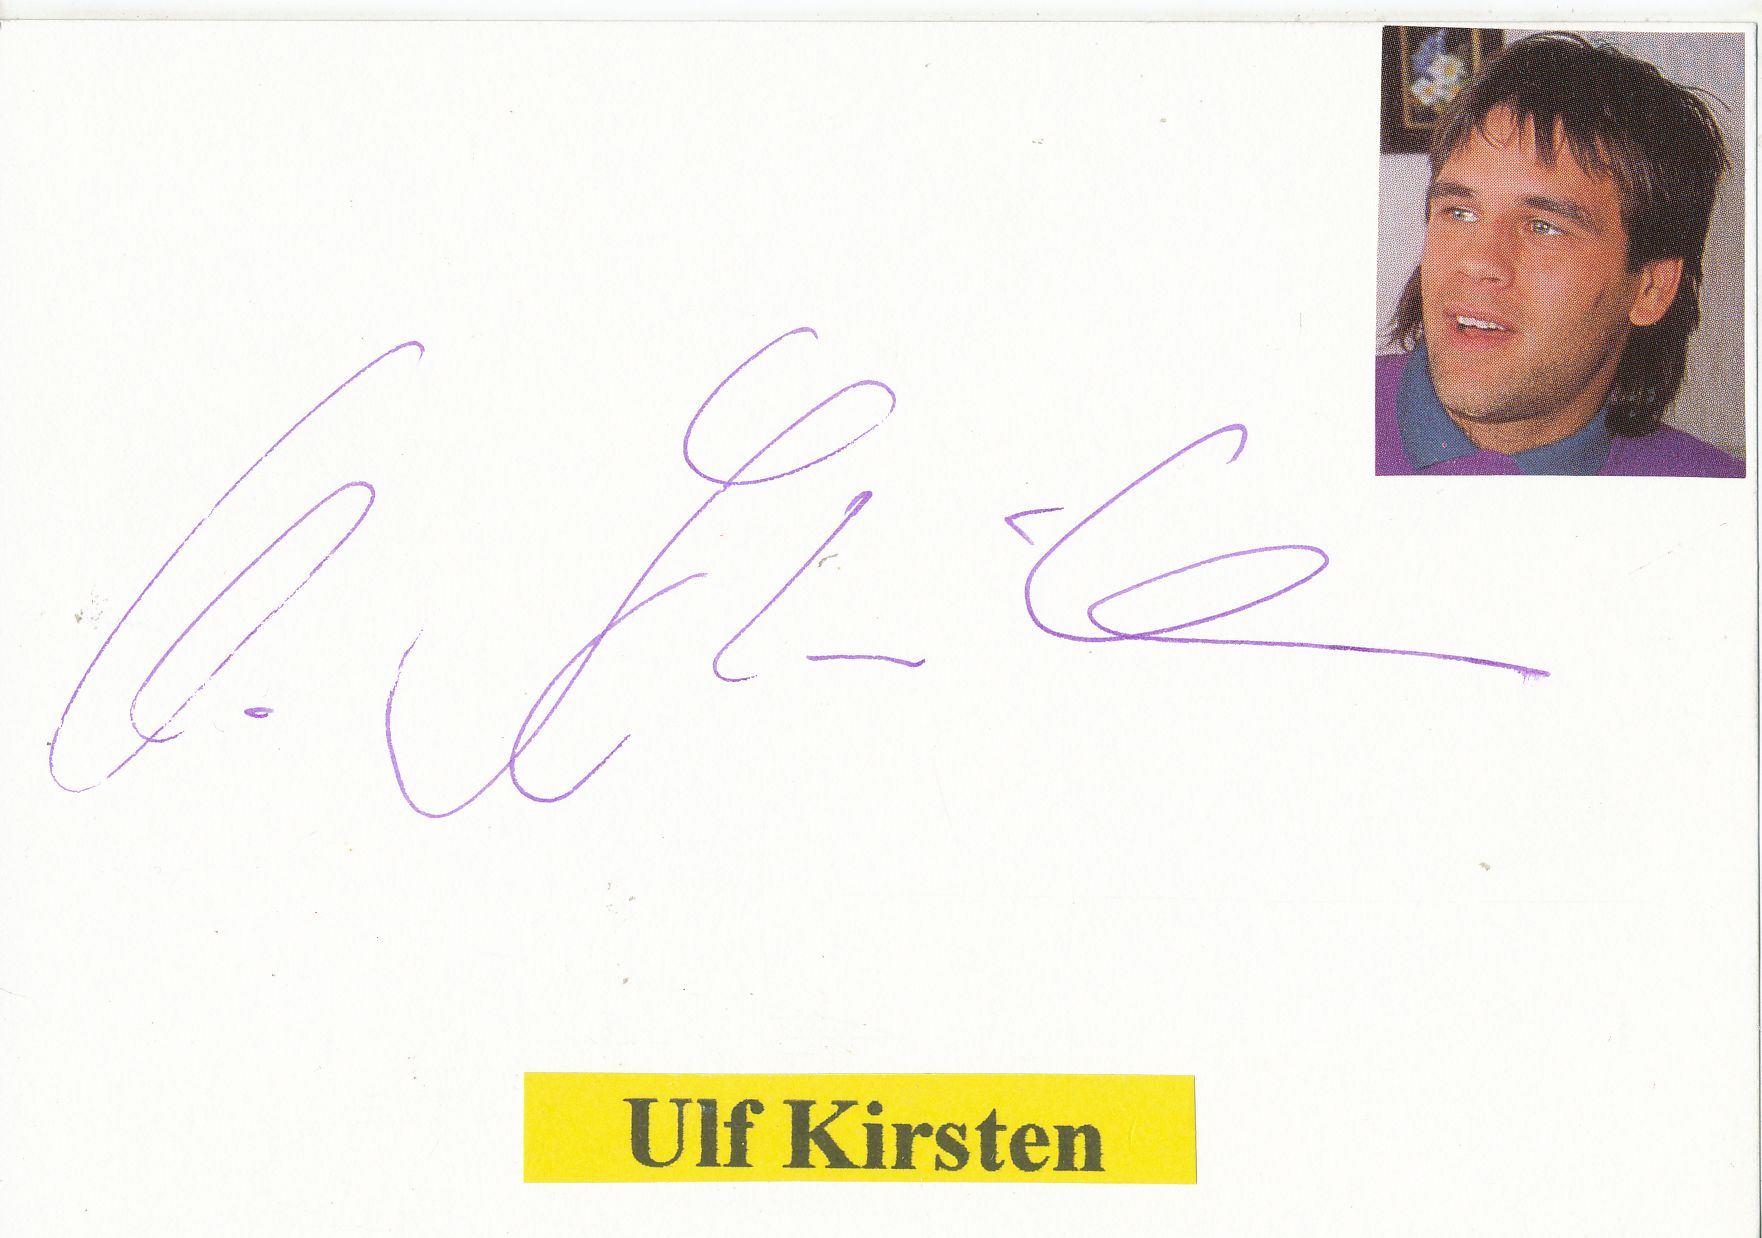 Ulf Kirsten DFB Autogrammkarte 1994 Original Signiert A 203539 